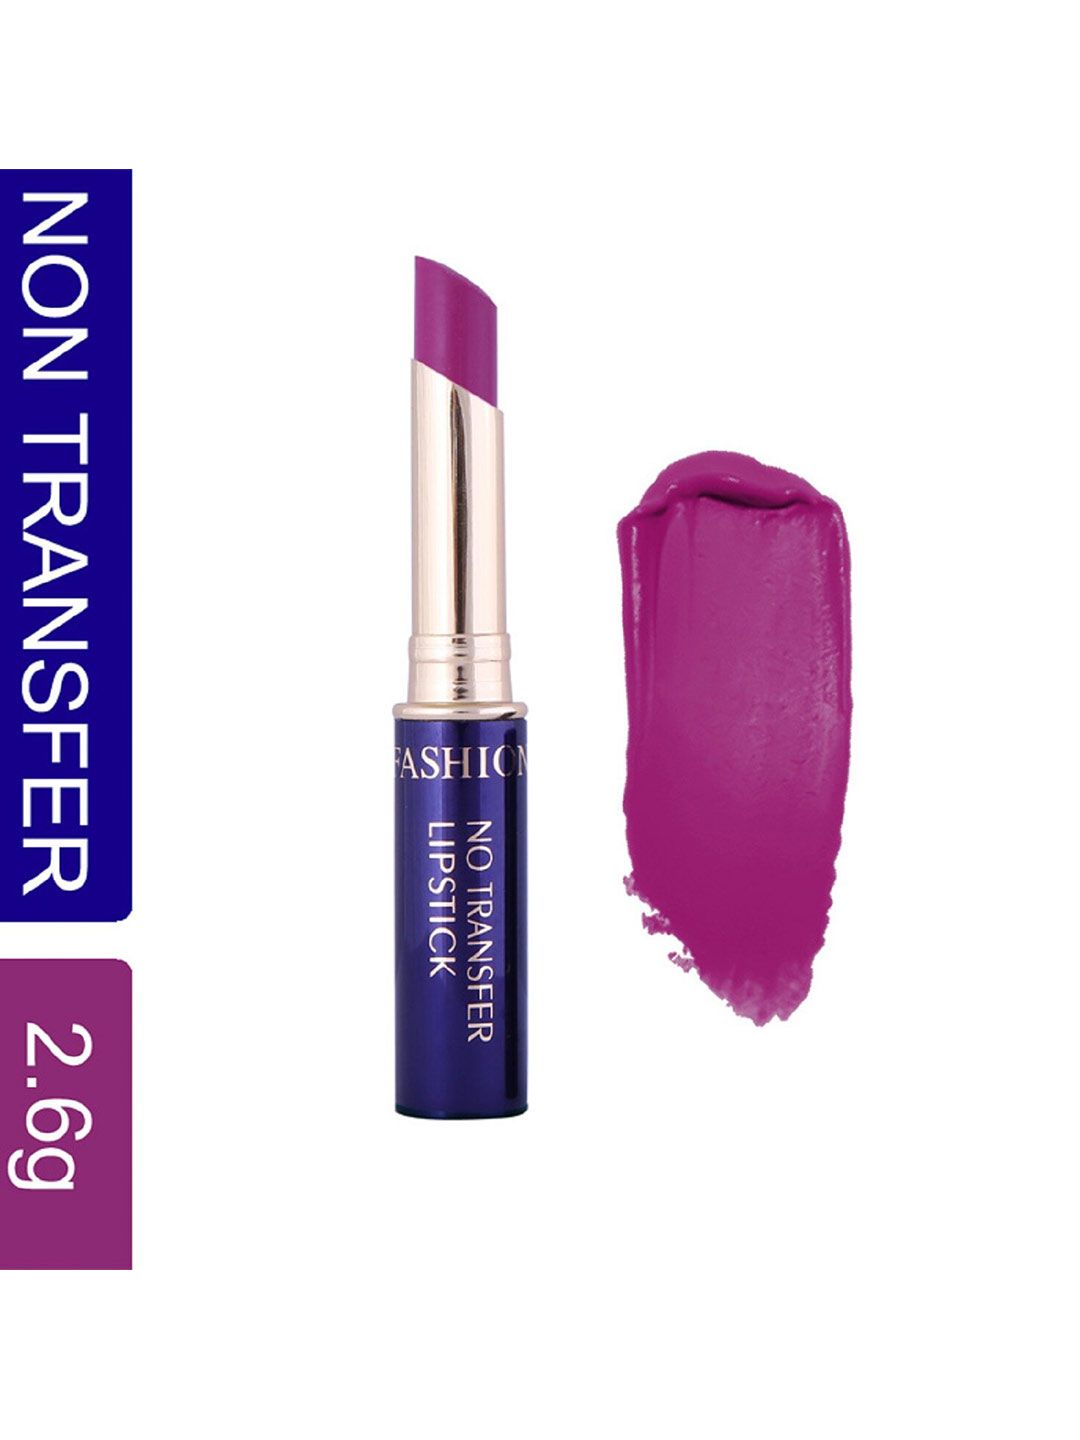 Fashion Colour Non-Transfer Waterproof Matte Lipstick - Violet Light 06 Price in India